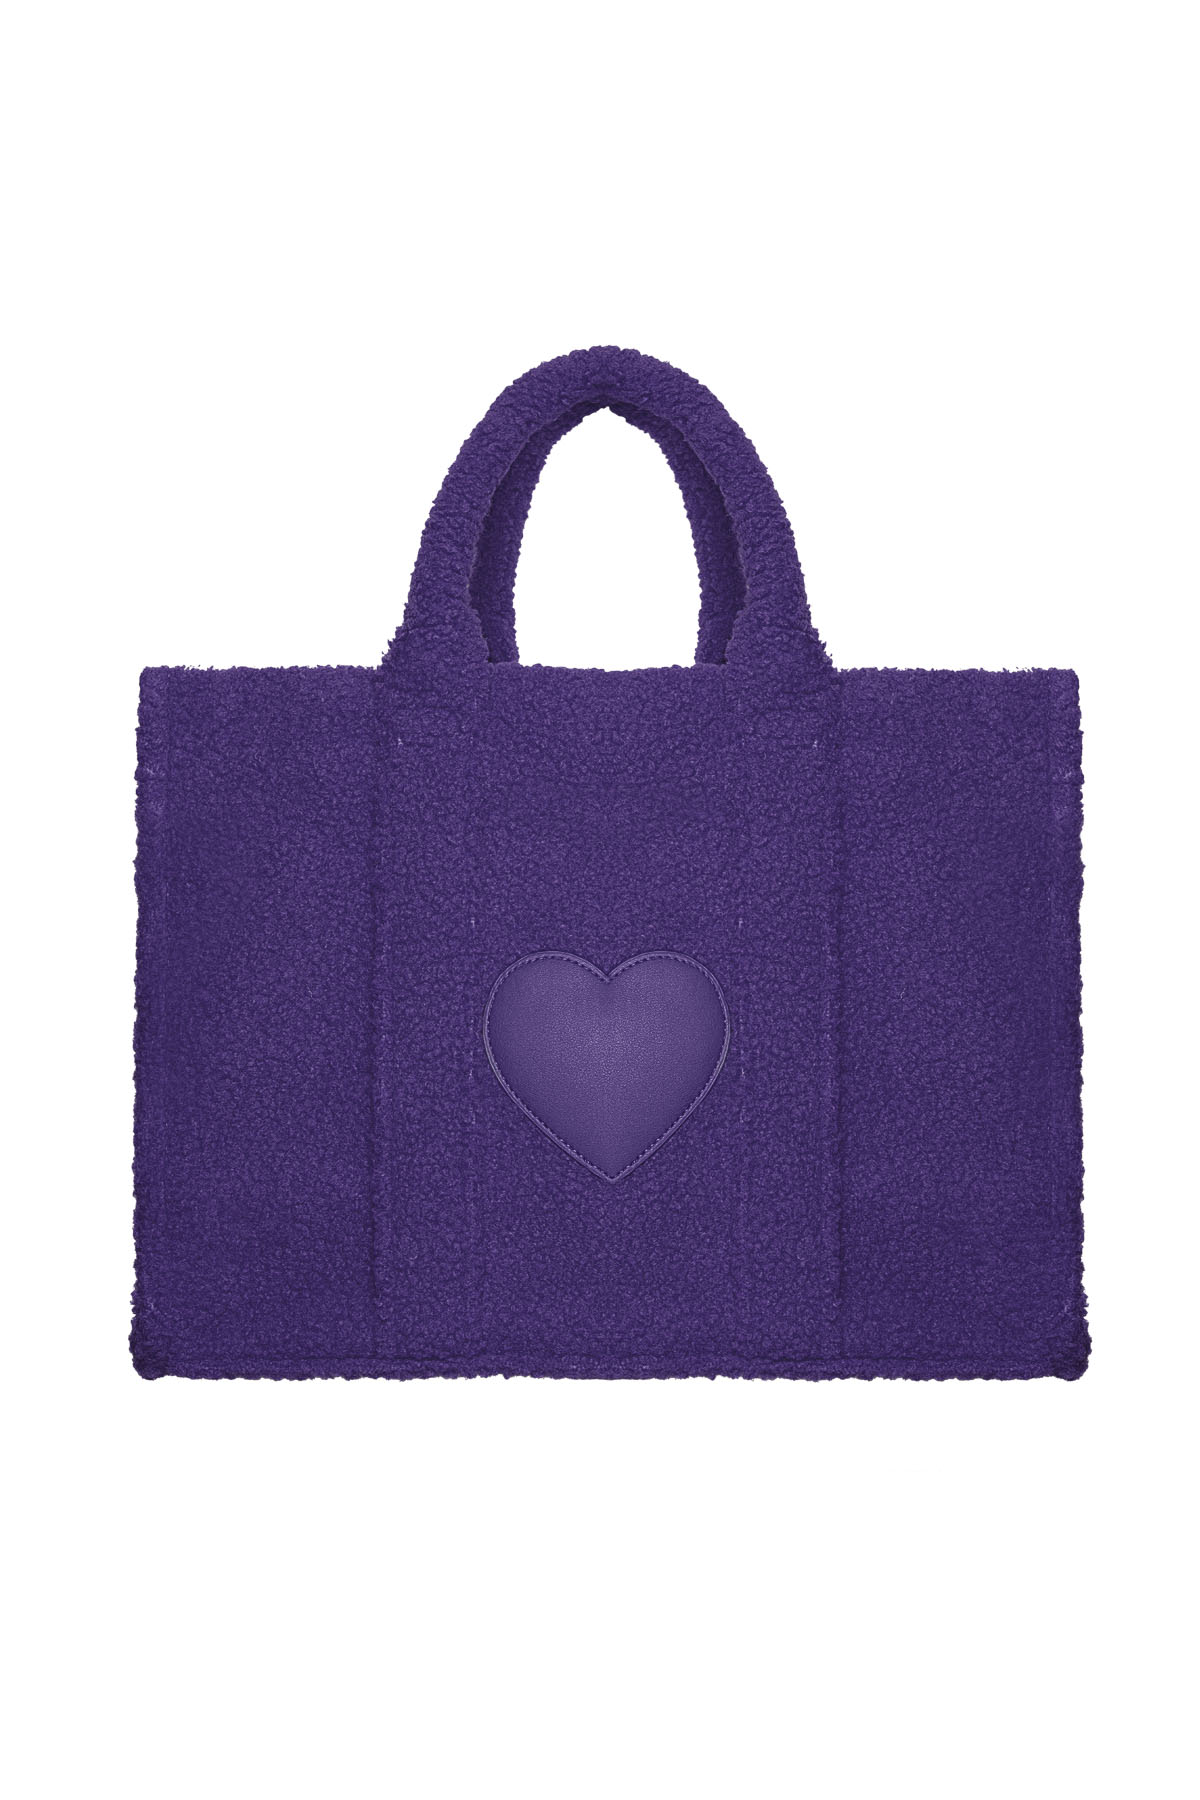 Shopper Teddy con corazón - violeta